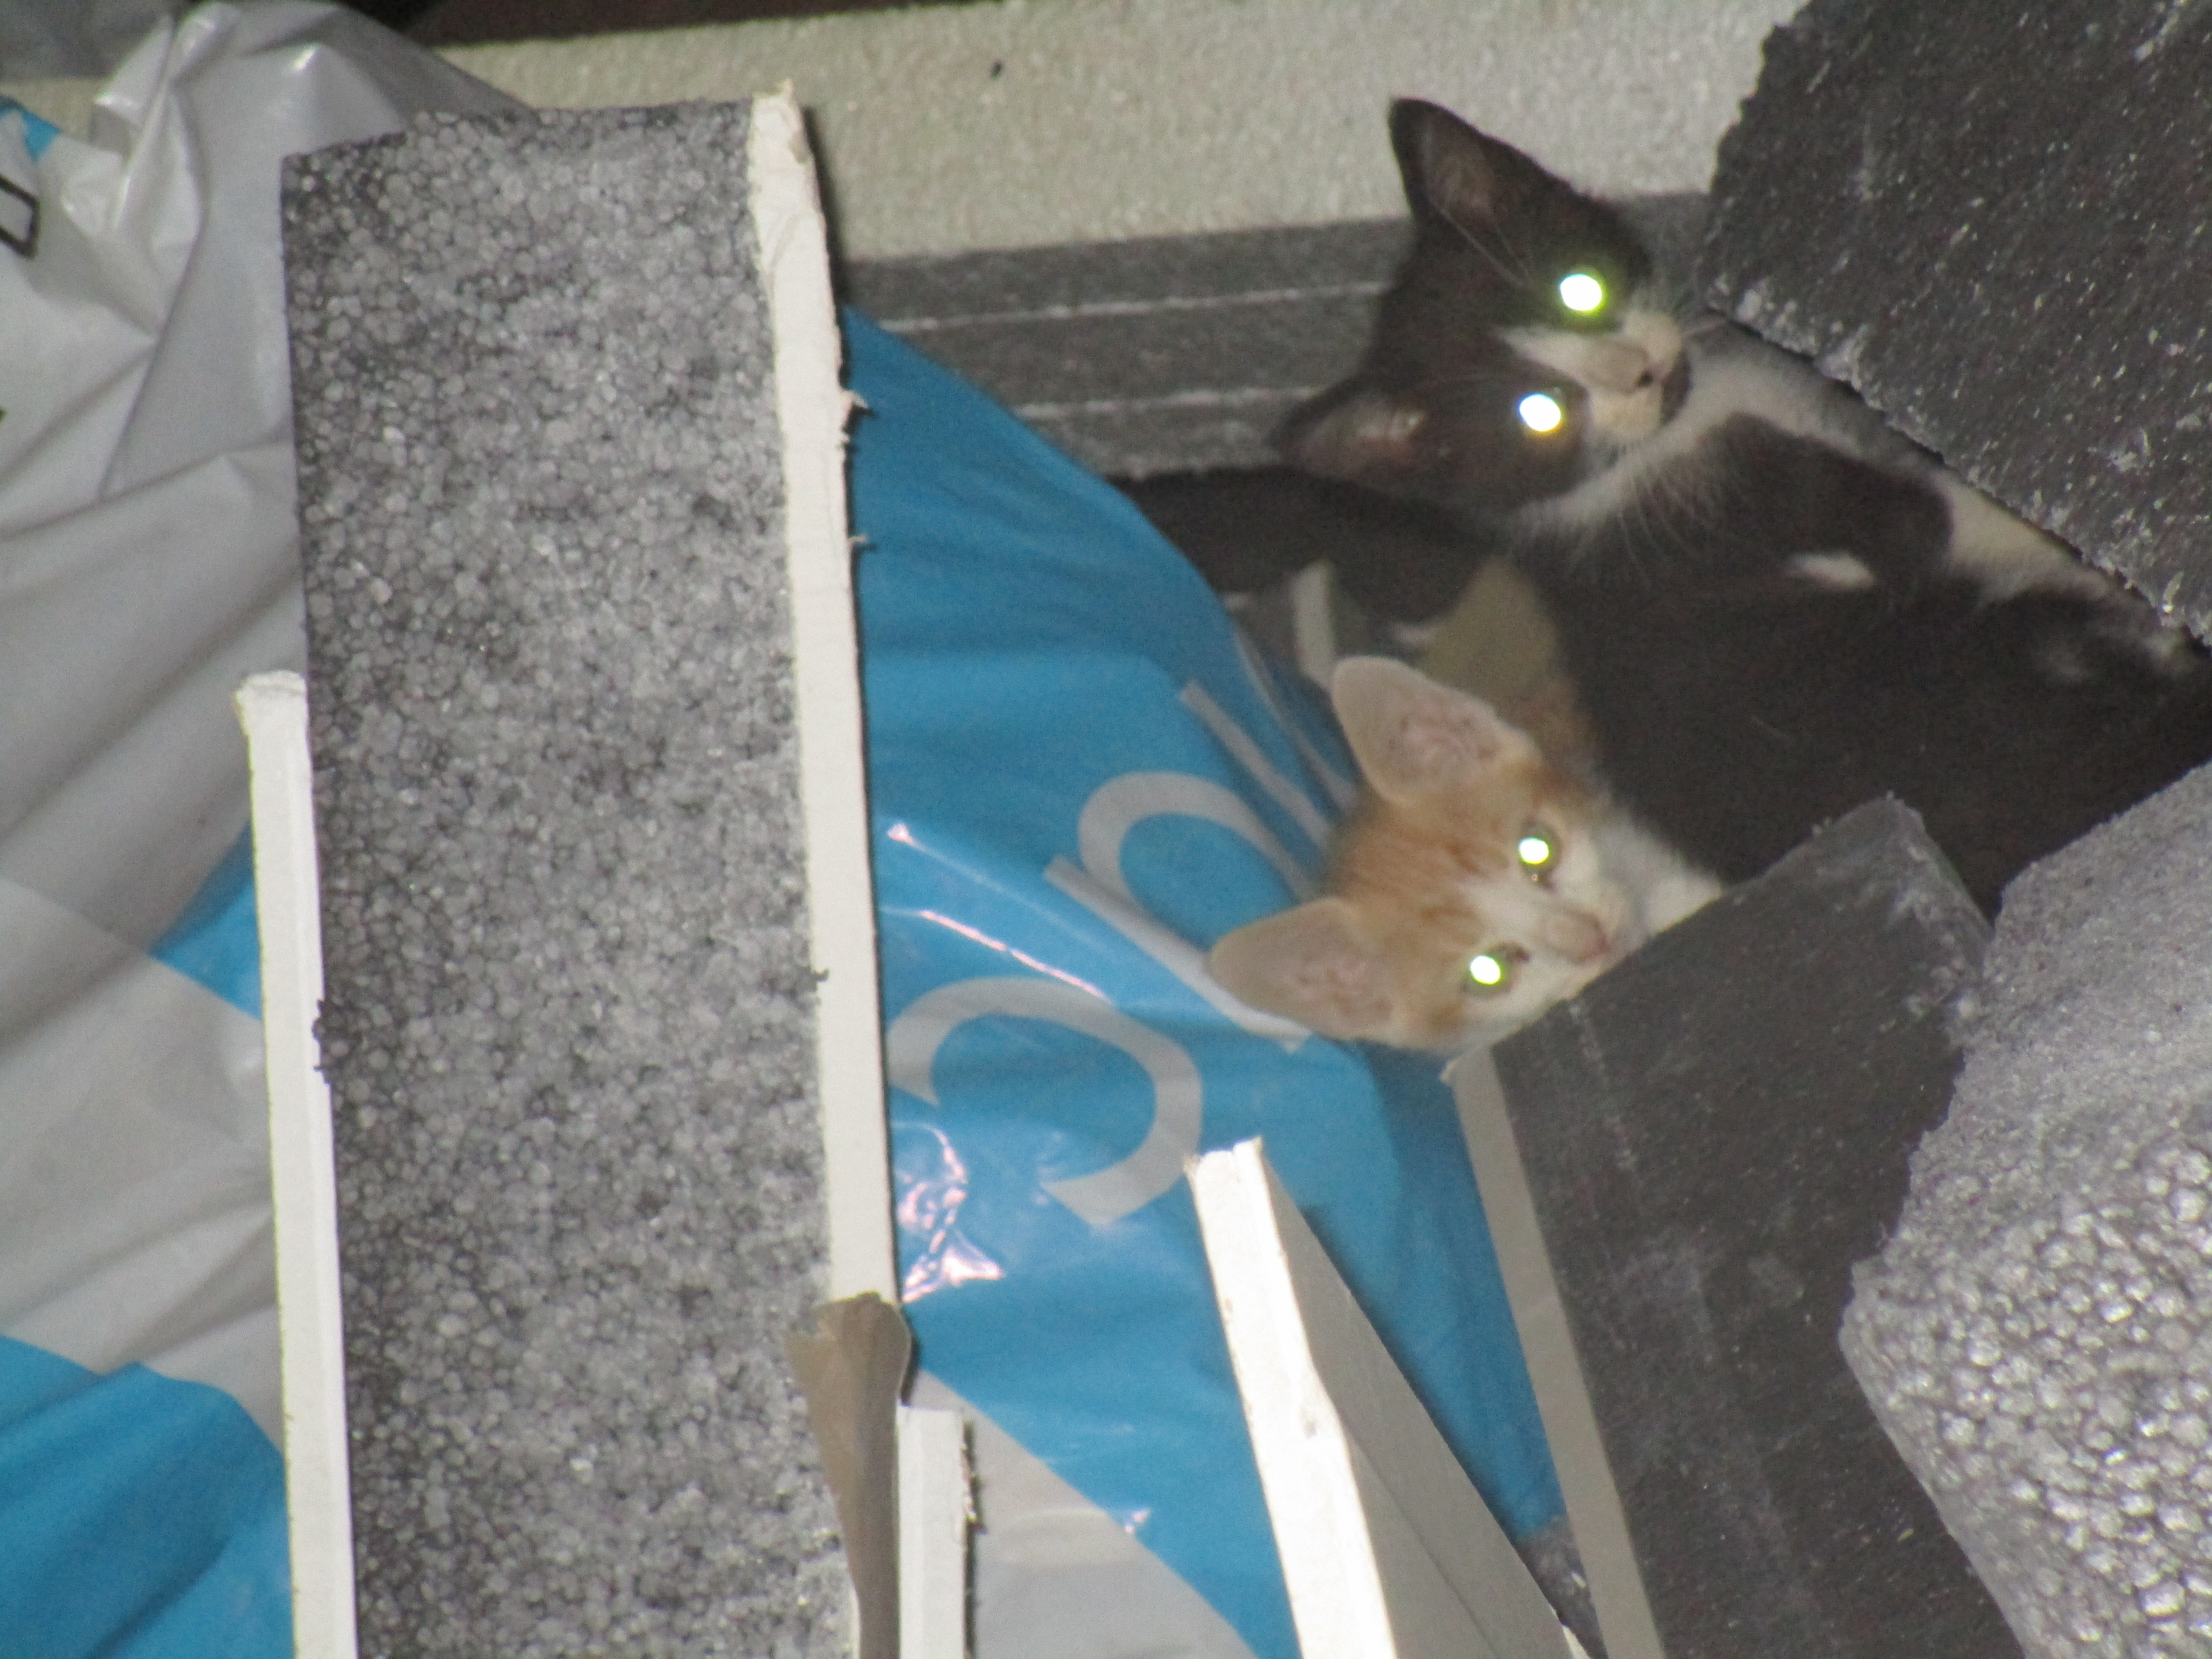 SOS pour 2 chatons abandonnés dans une benne ! 06 70 28 64 40